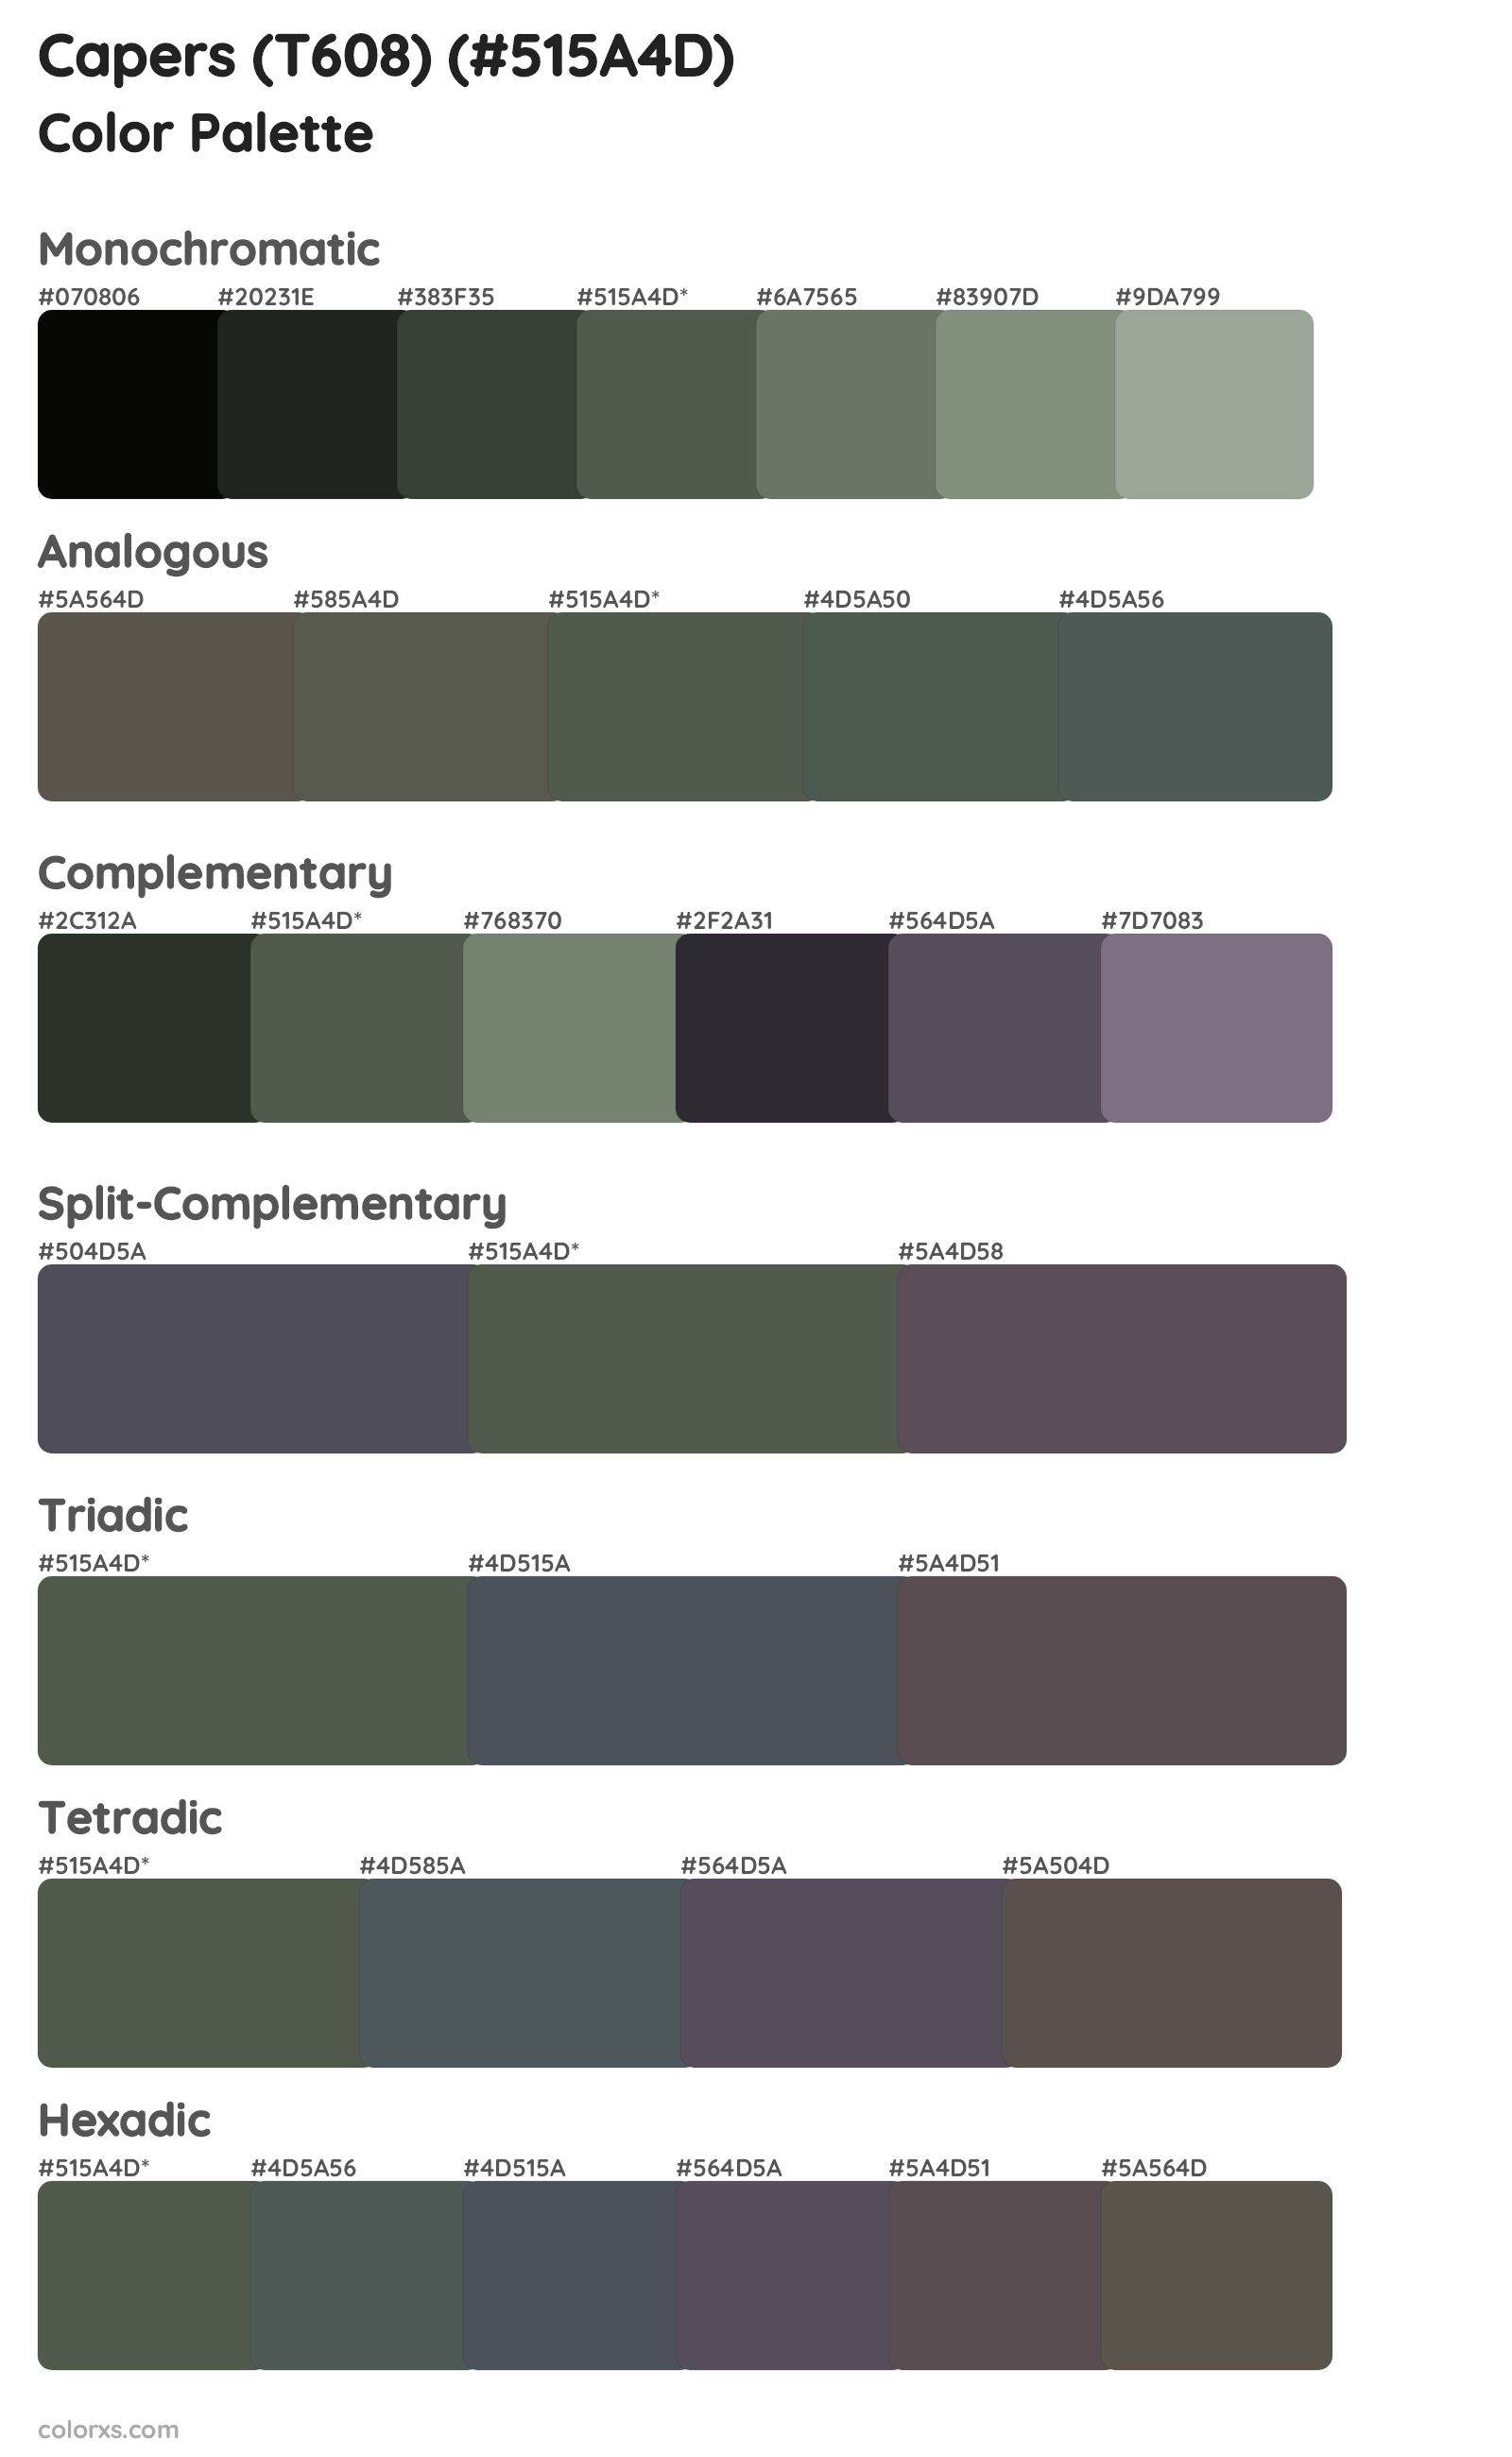 Capers (T608) Color Scheme Palettes